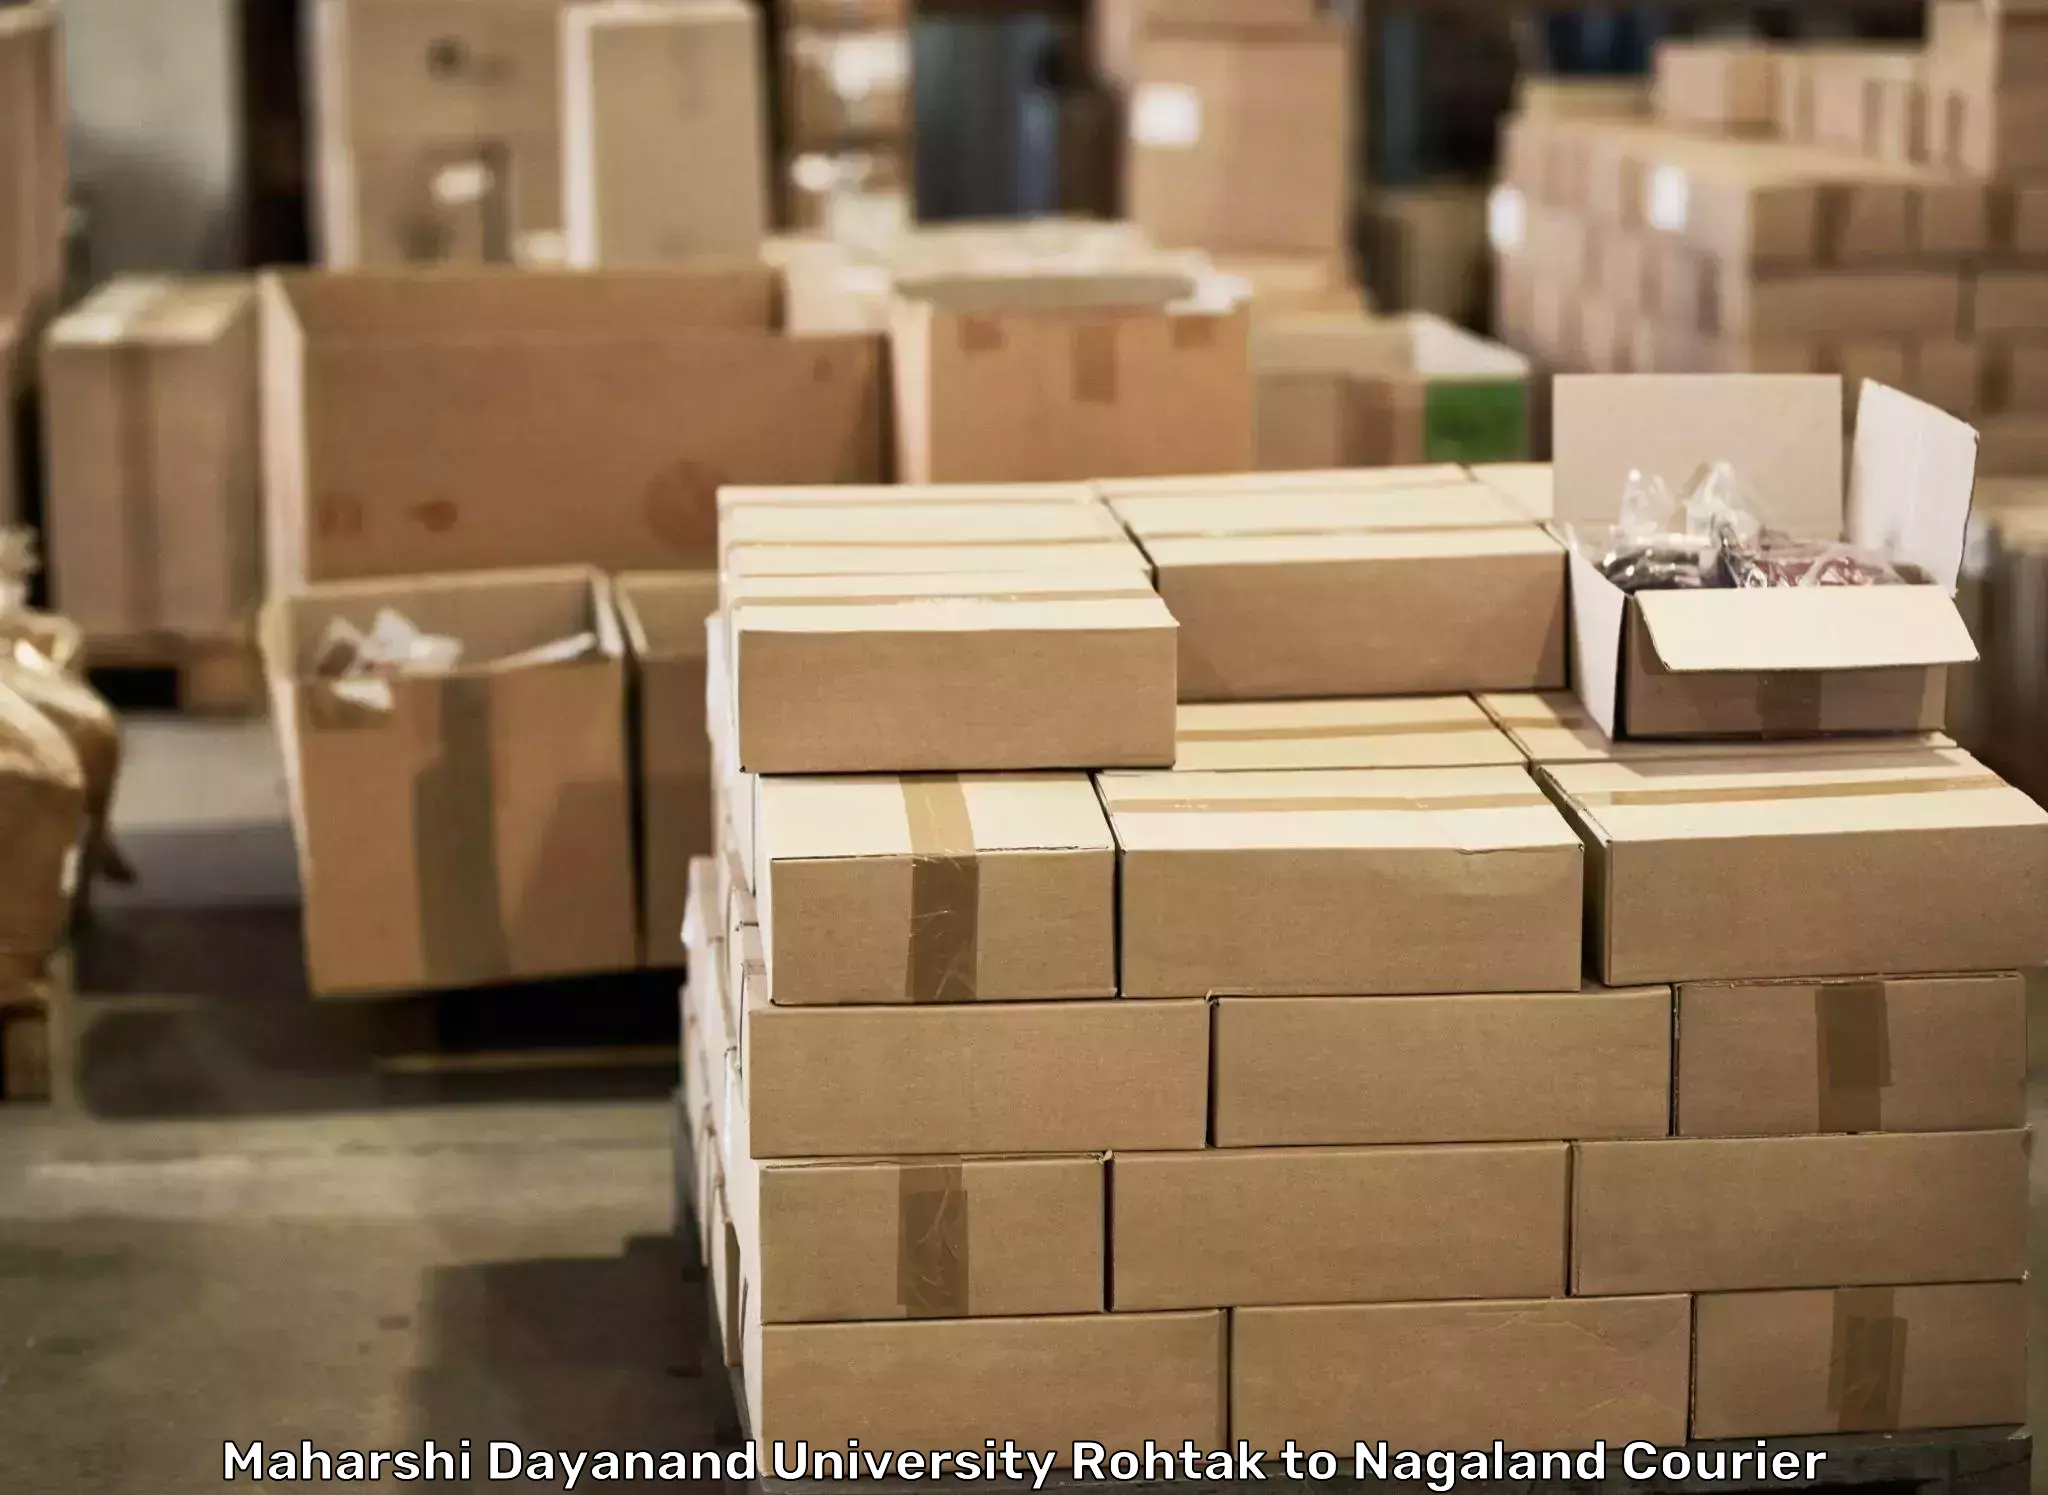 Furniture moving experts Maharshi Dayanand University Rohtak to NIT Nagaland